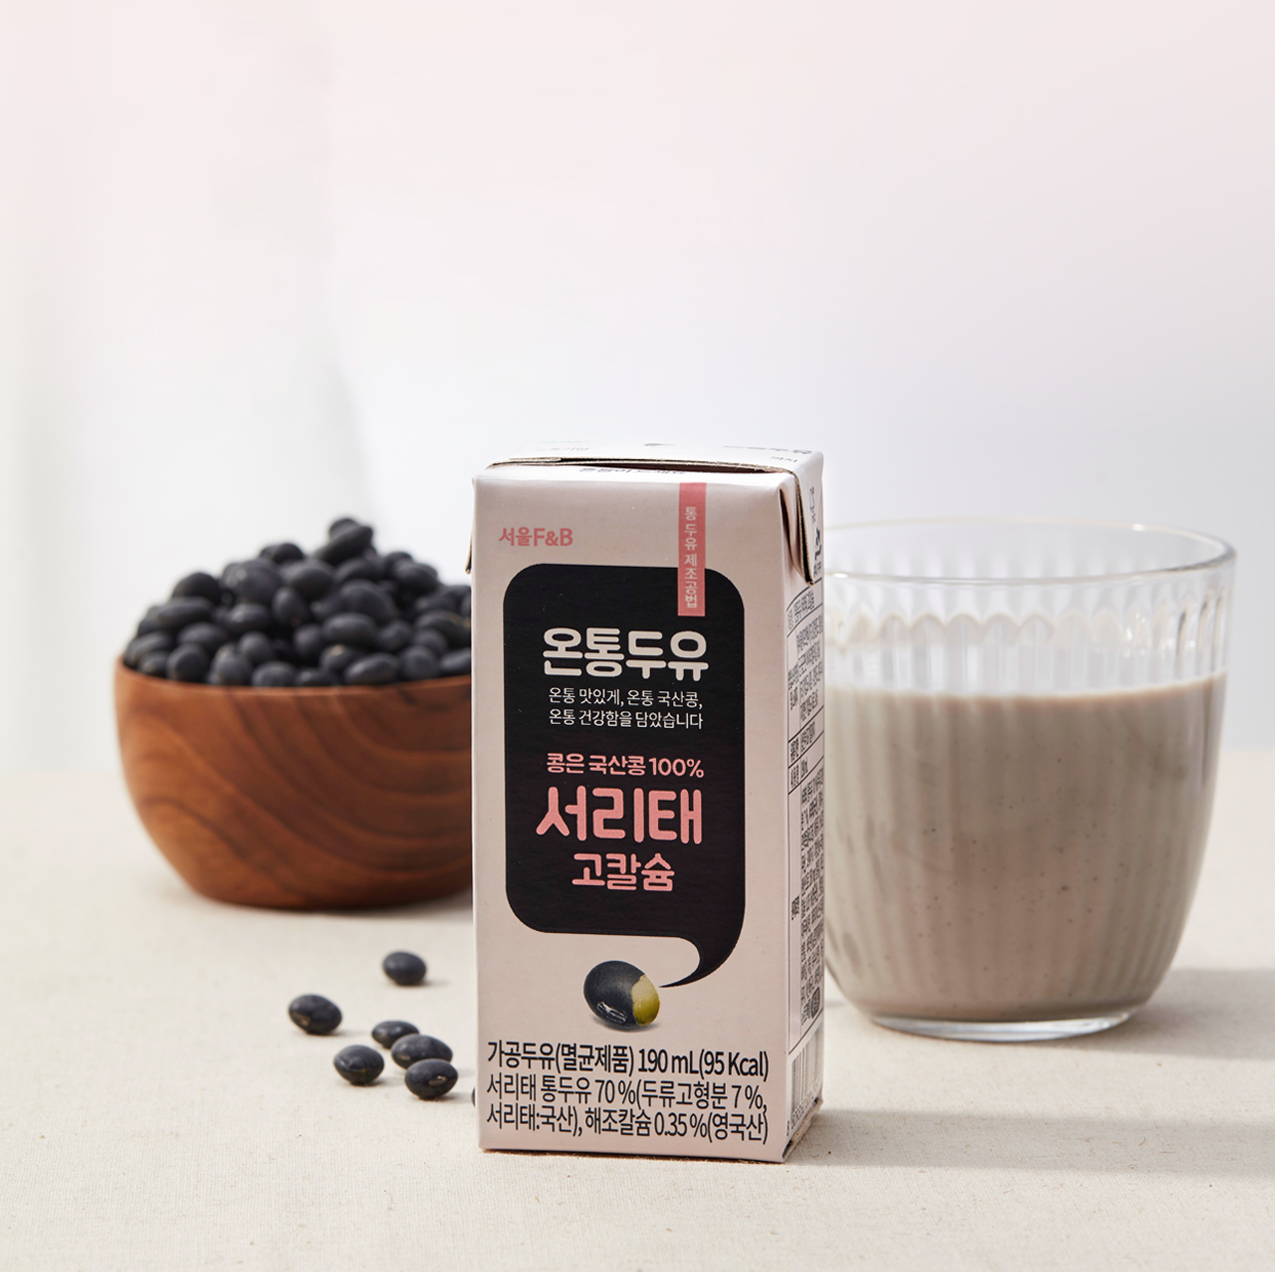 Sữa đậu nành đen Hàn Quốc cao cấp ONTONG Seoul F&B - Bổ Sung canxi - 190ml